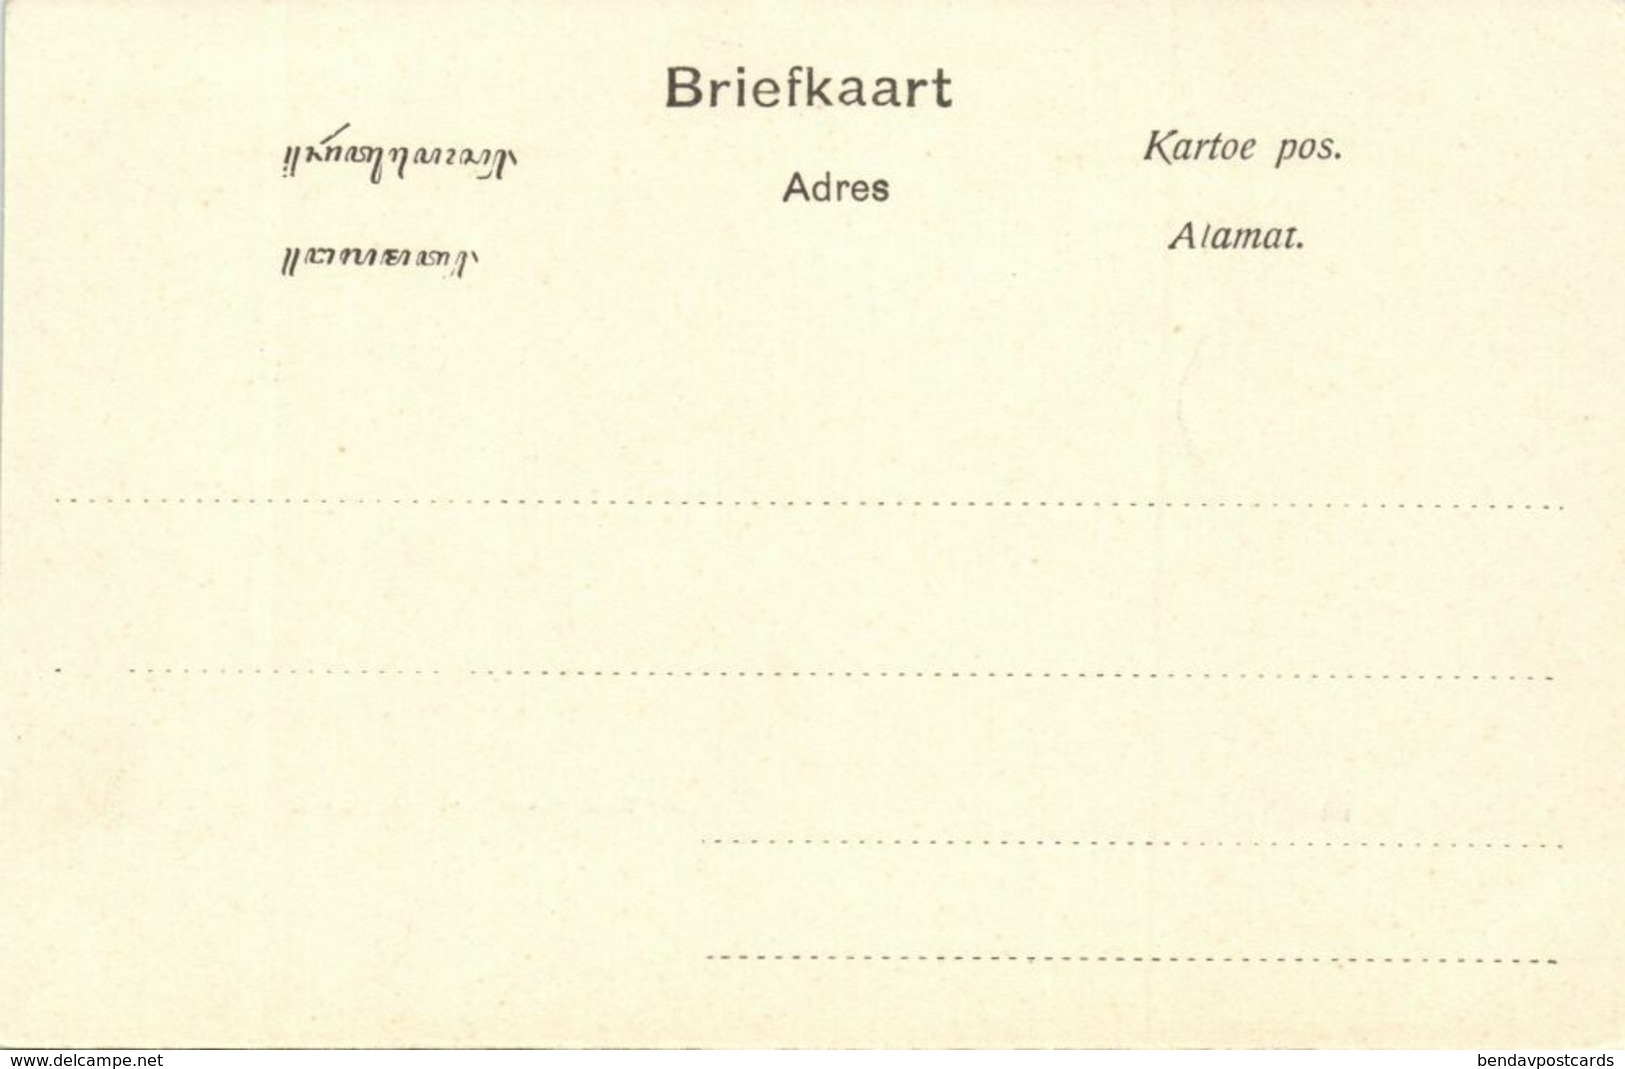 Indonesia, JAVA SOERABAIA, Jalan Pasar Besar, Bakery Grimm & Co. (1899) Postcard - Indonesia